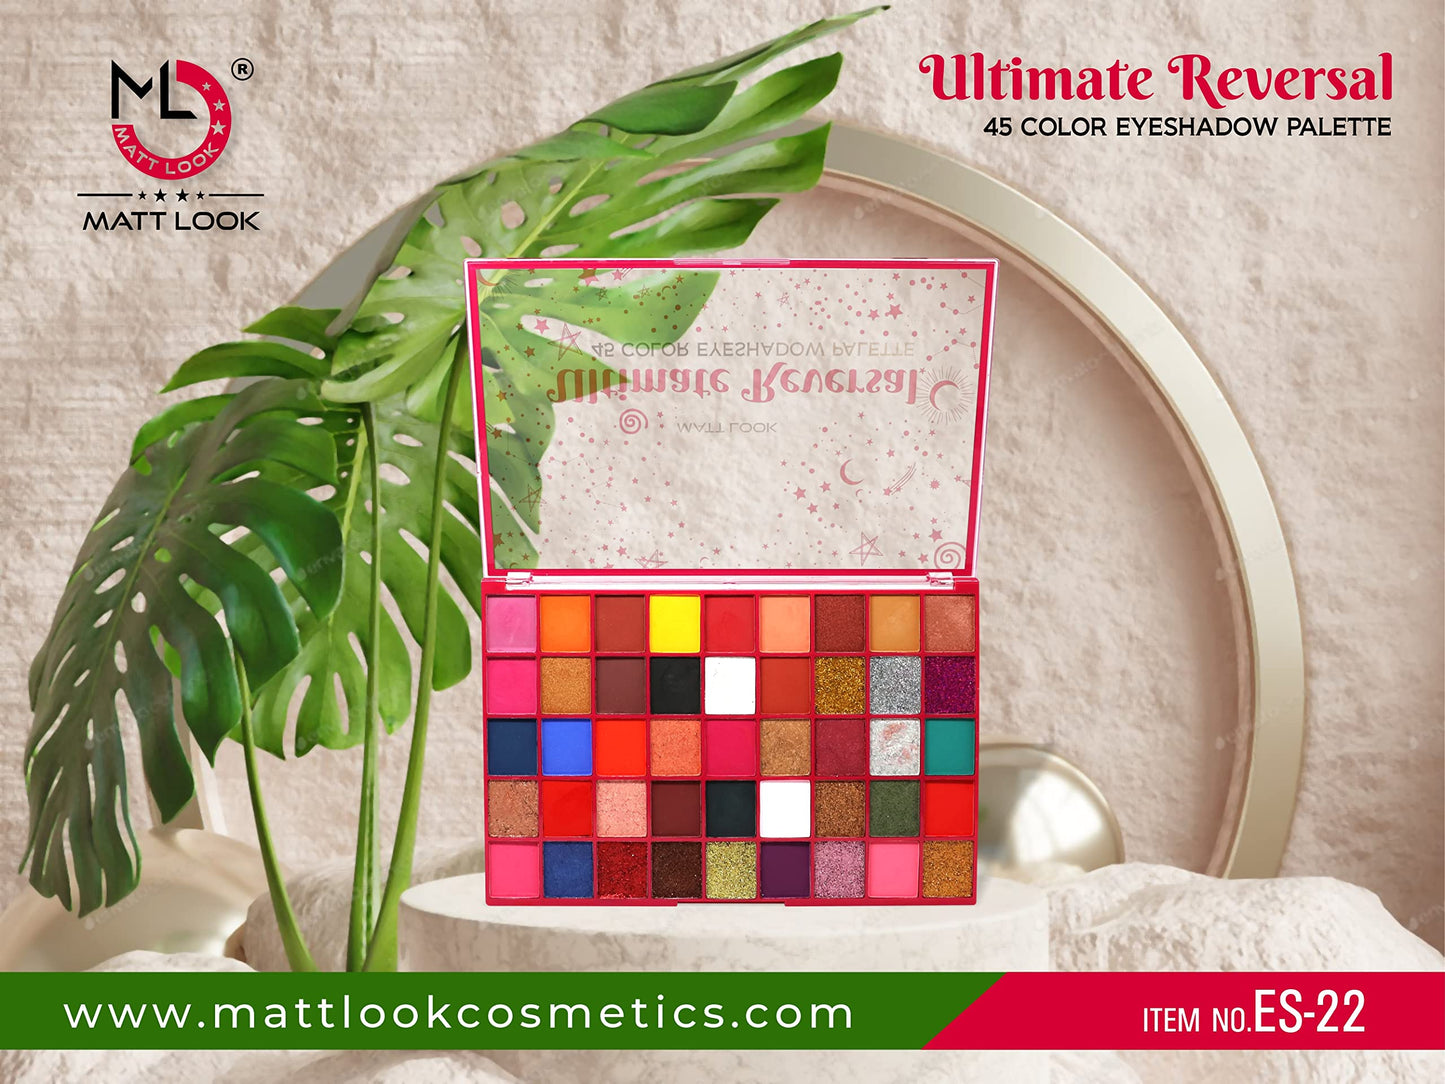 Mattlook Ultimate Reversal 45 Color Eyeshadow Palette, Multicolor-01 (65gm)